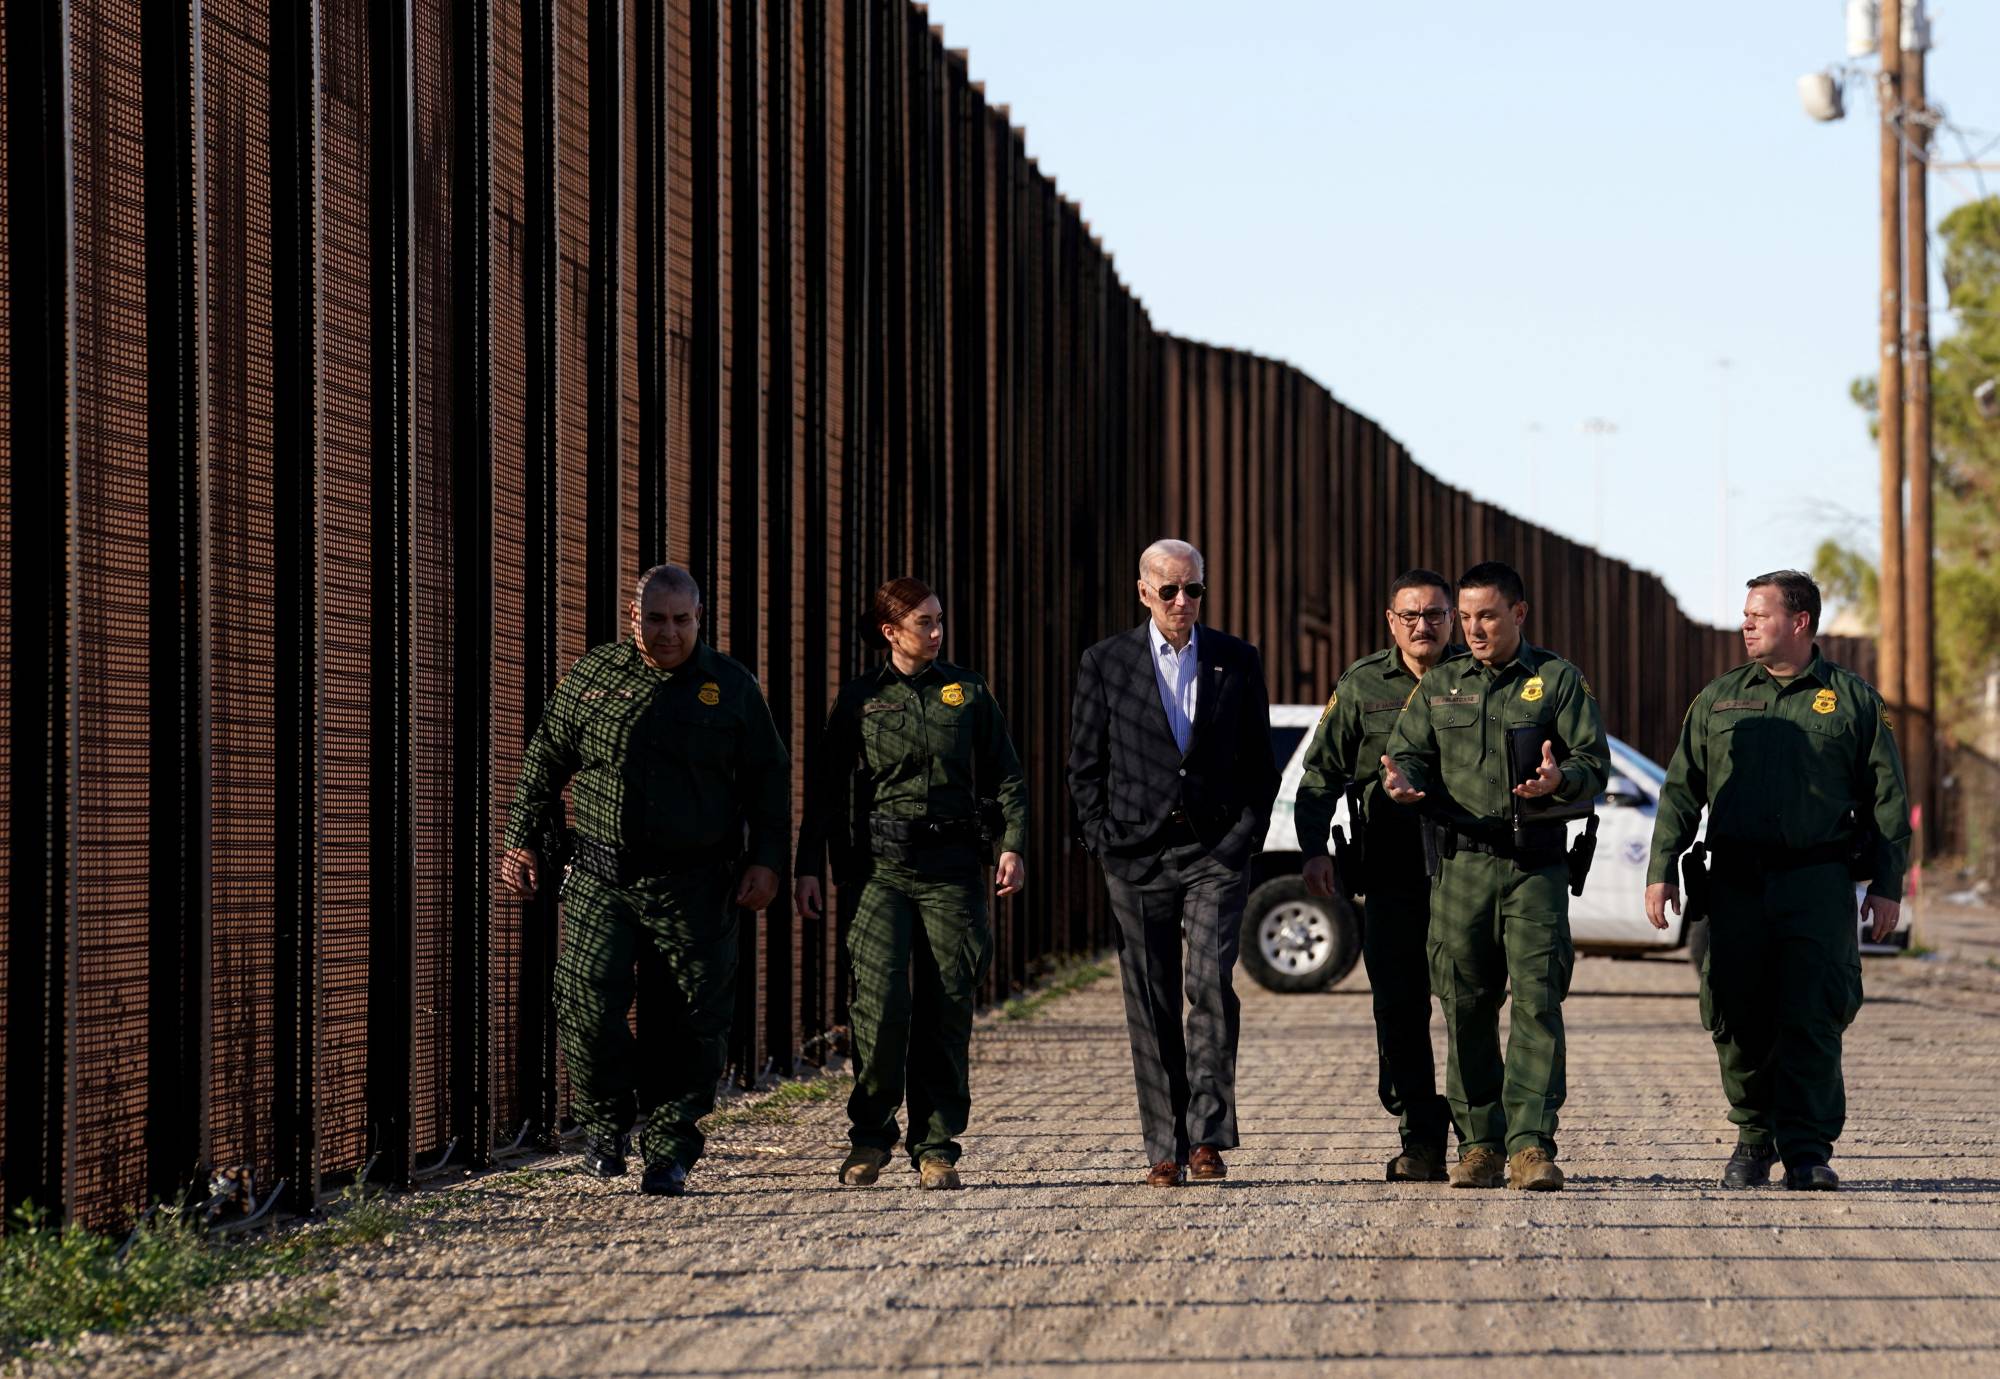 Ο Τ.Μπάιντεν επεκτείνει το τείχος στο Μεξικό: «Δεν είχα επιλογή» – Ν.Τραμπ: «Να ζητήσεις συγγνώμη»